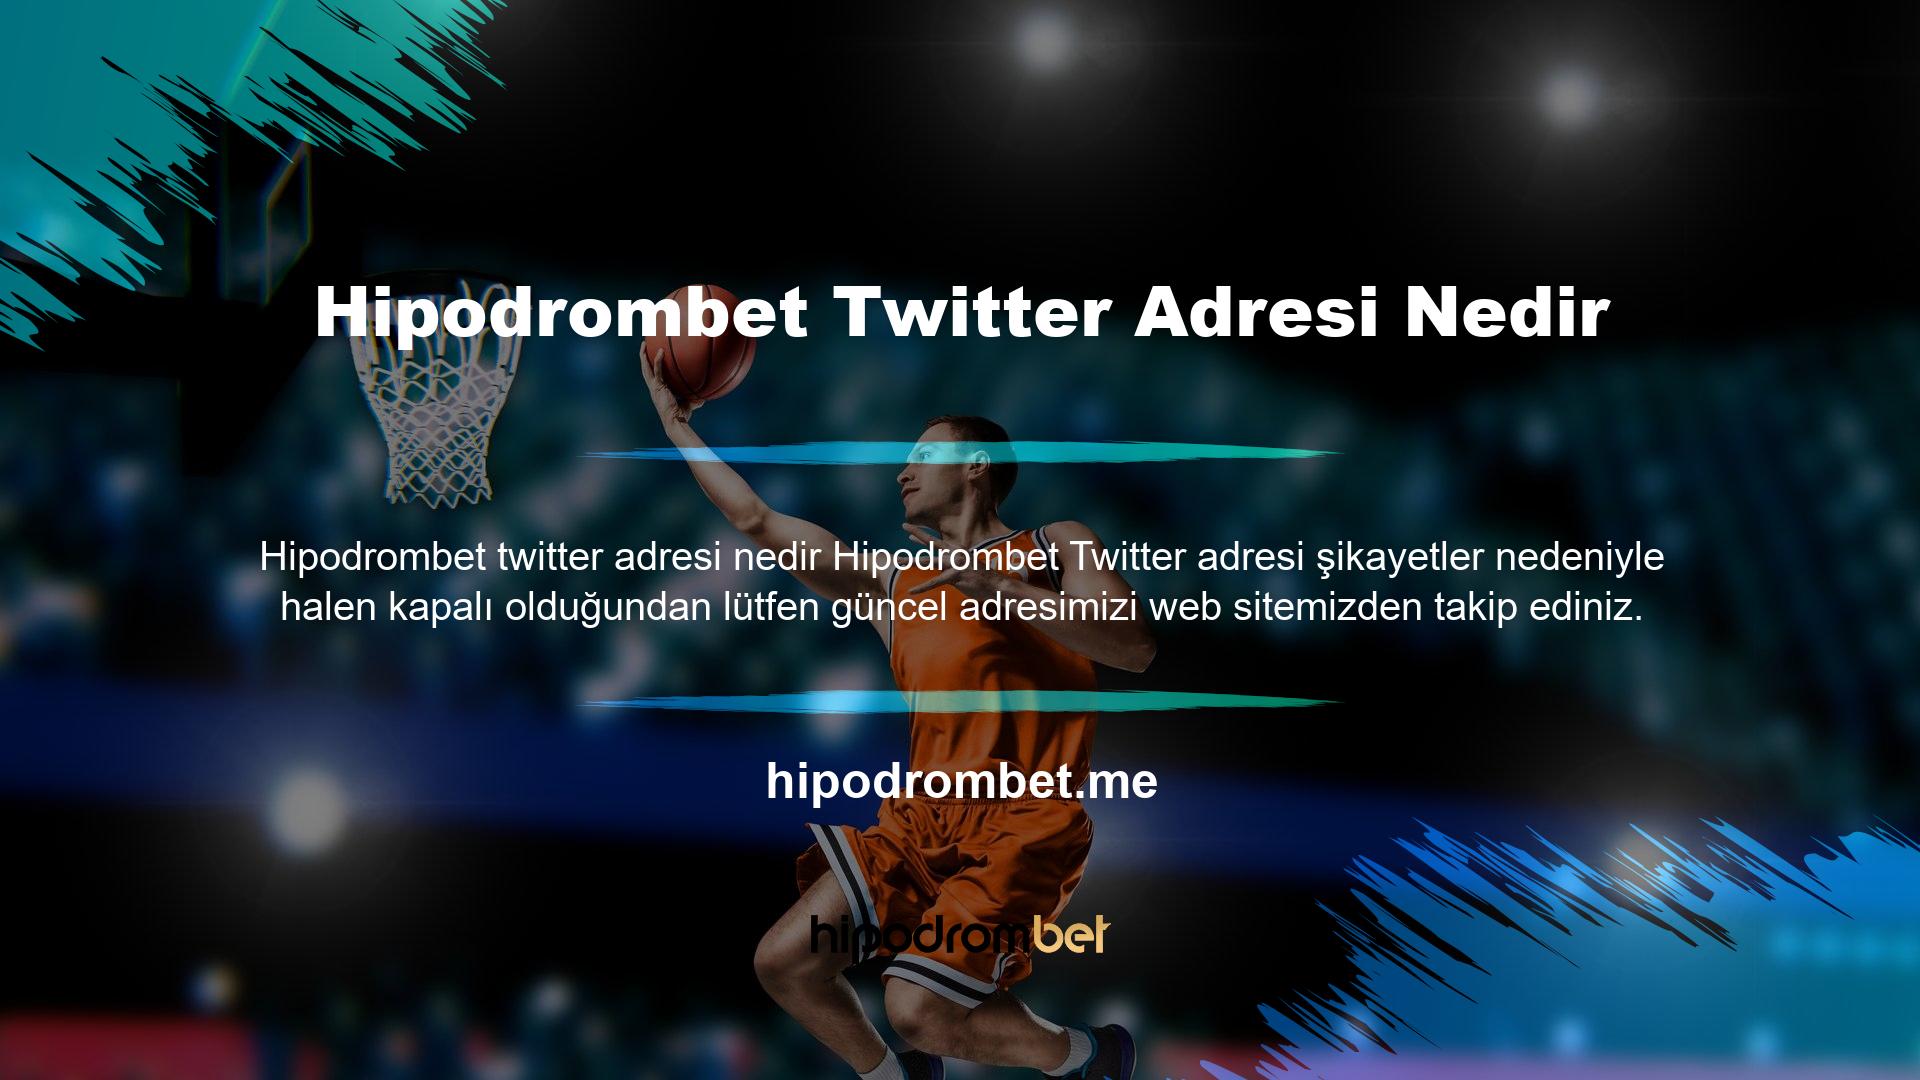 Hipodrombet Twitter adresi nedir? Hipodrombet canlı maçlarını izleyin: Hipodrombet canlı maçlarını sitemizde bulabilirsiniz